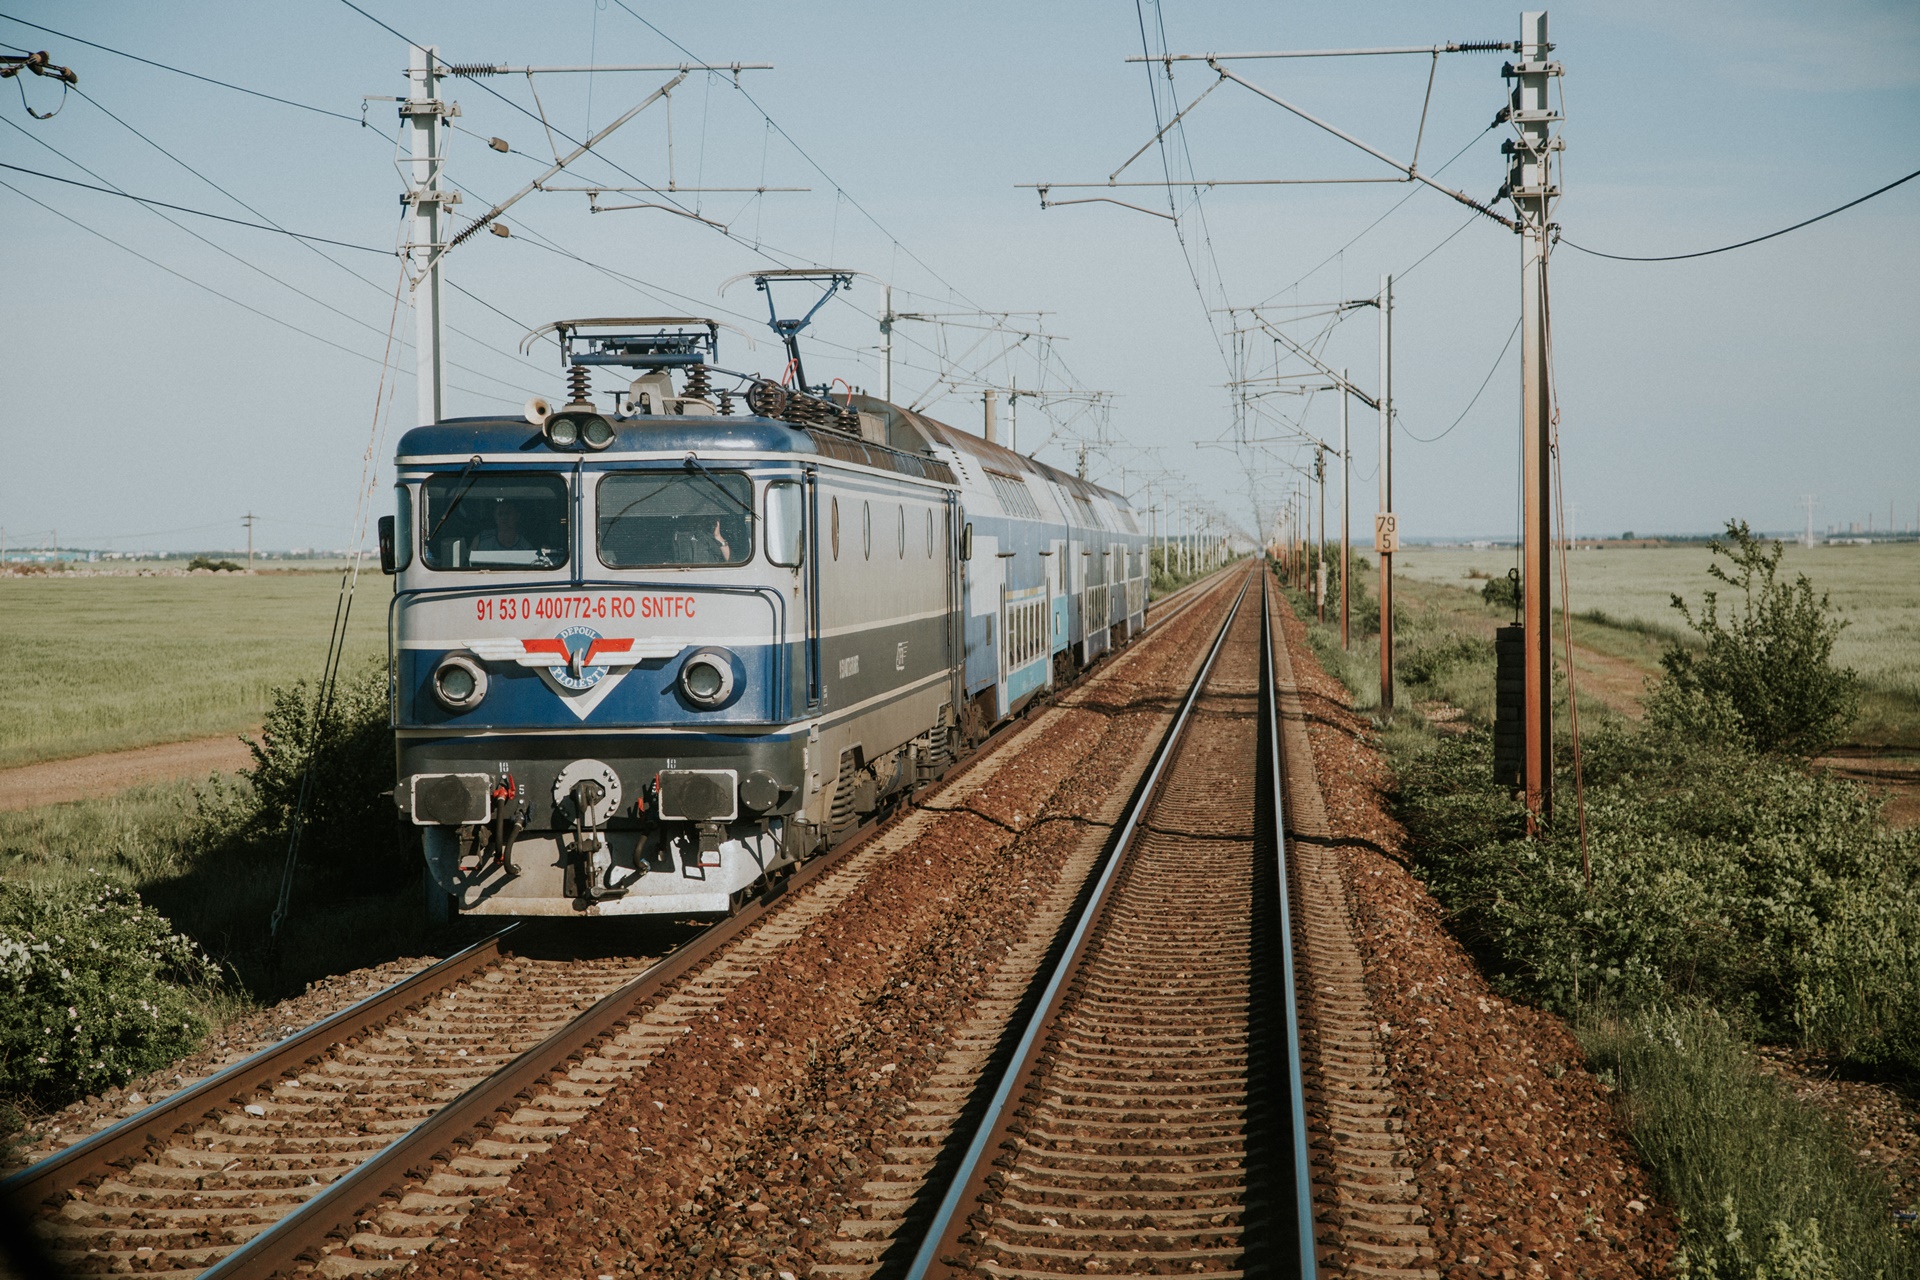  Povestea lui Vlad Eftenie – Prima oară în locomotiva unui tren, cu Canon 200D